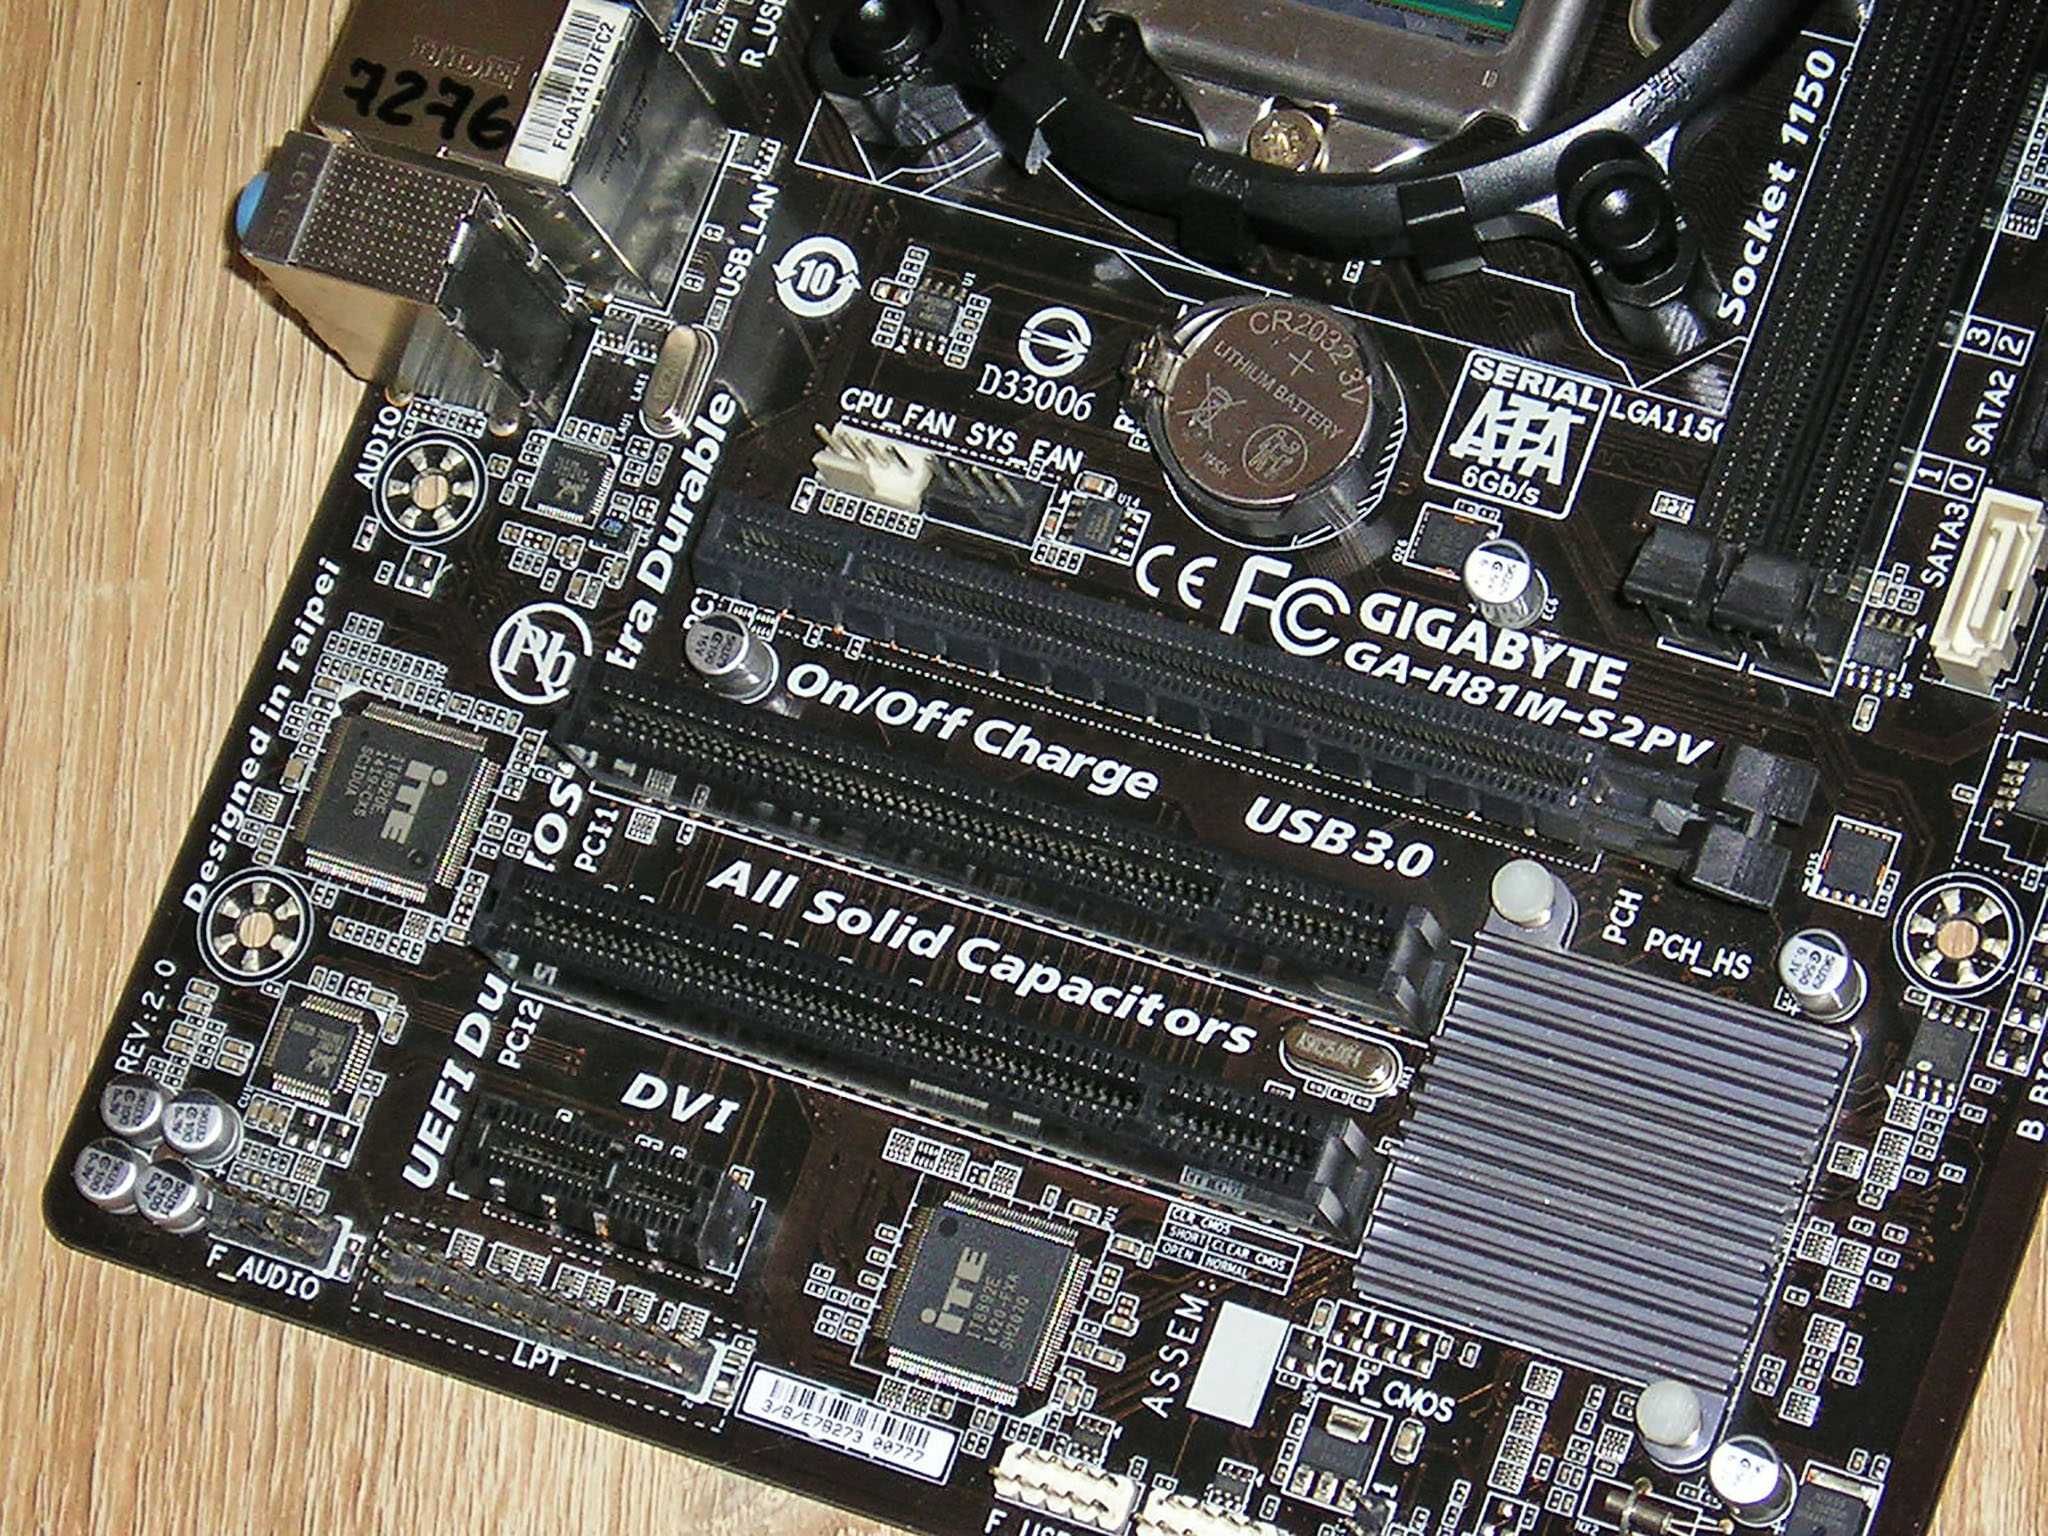 Комплект для ПК Intel i5 s1150 (проц+материнка+память)